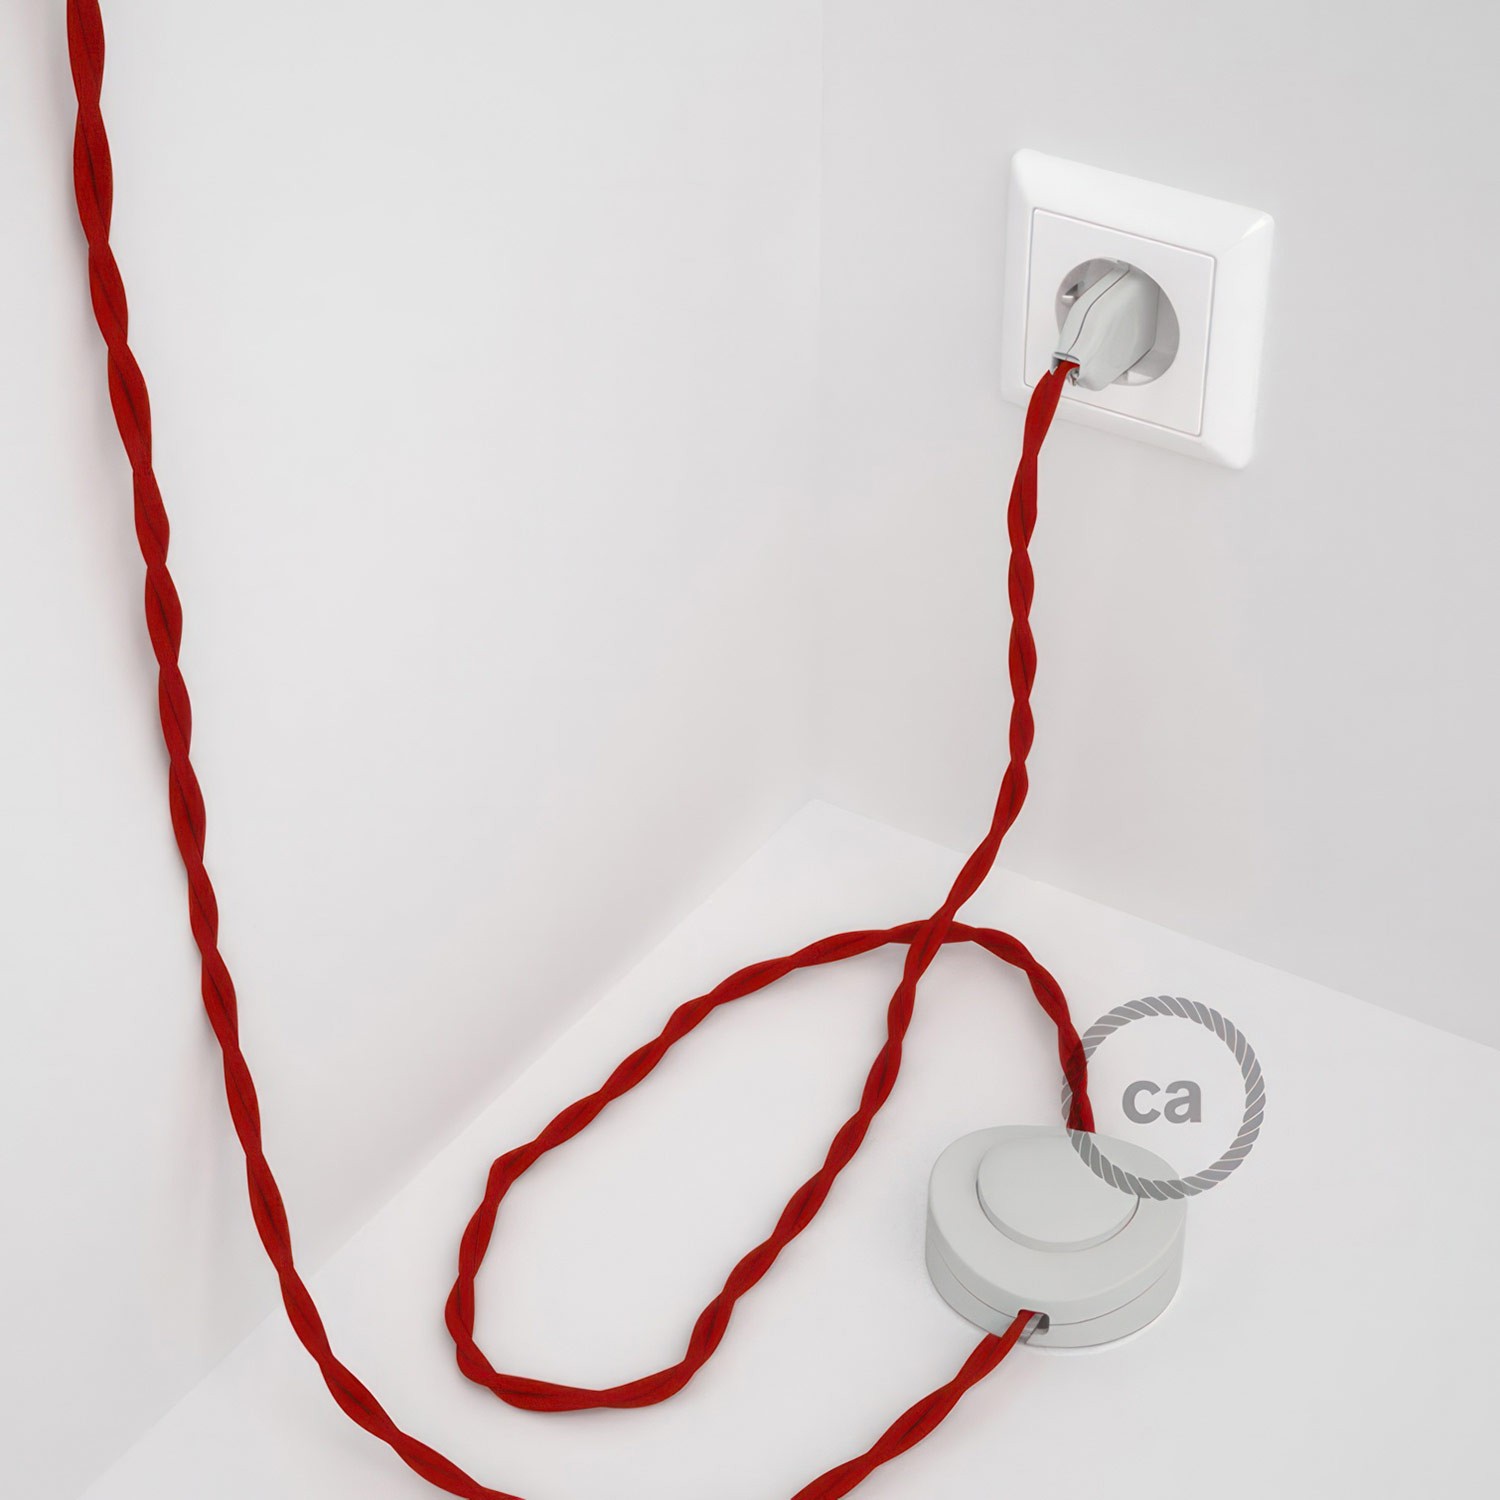 Cableado para lámpara de pie, cable TM09 Efecto Seda Rojo 3 m. Elige tu el color de la clavija y del interruptor!